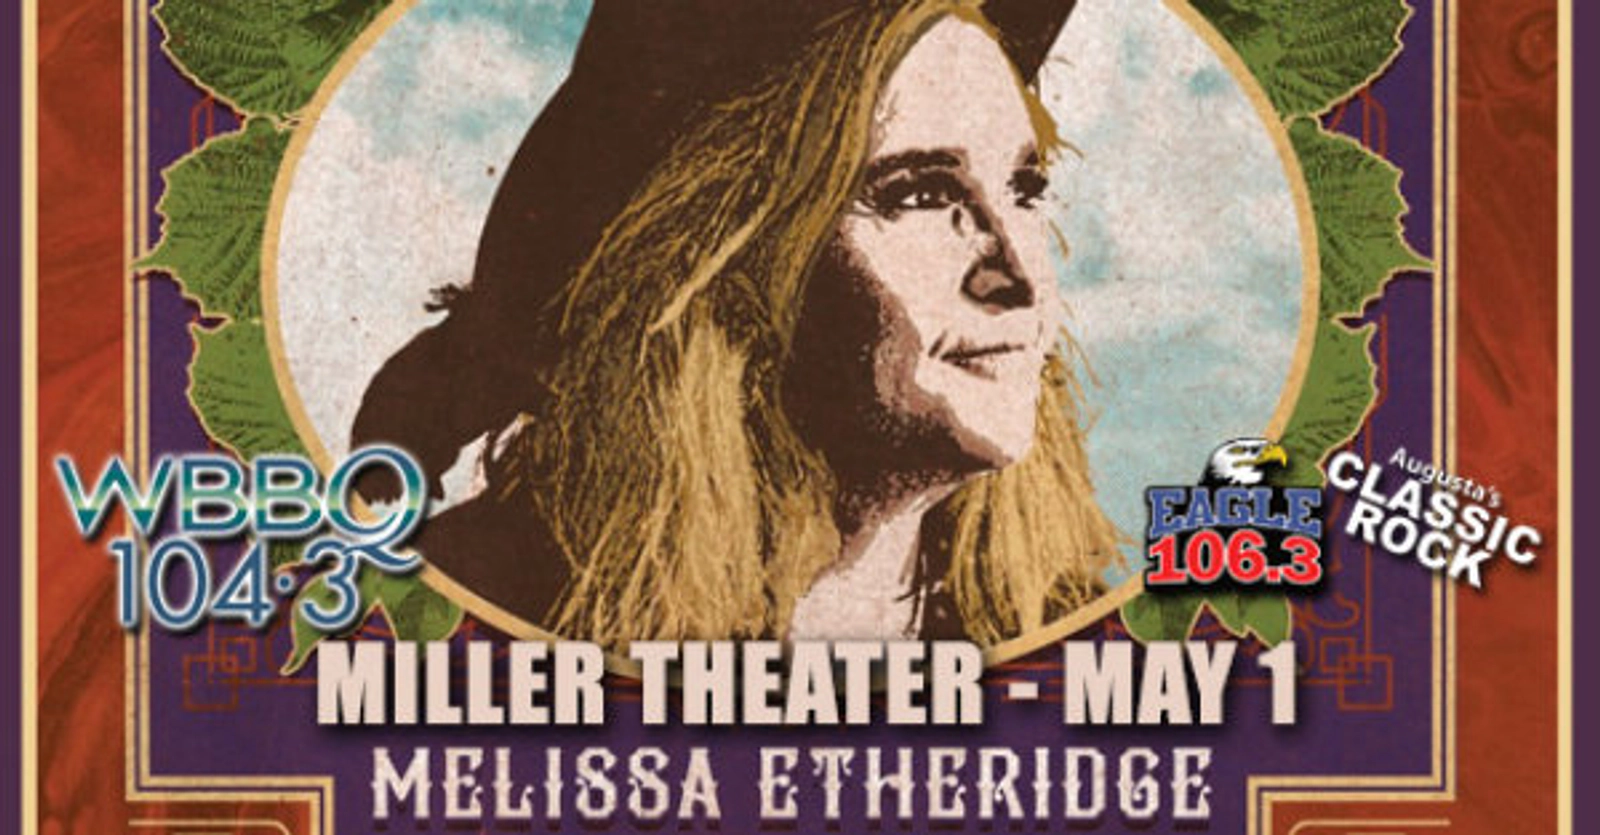 Melissa Etheridge - VIP Tickets on 5/1 at Miller Theater! - Thumbnail Image